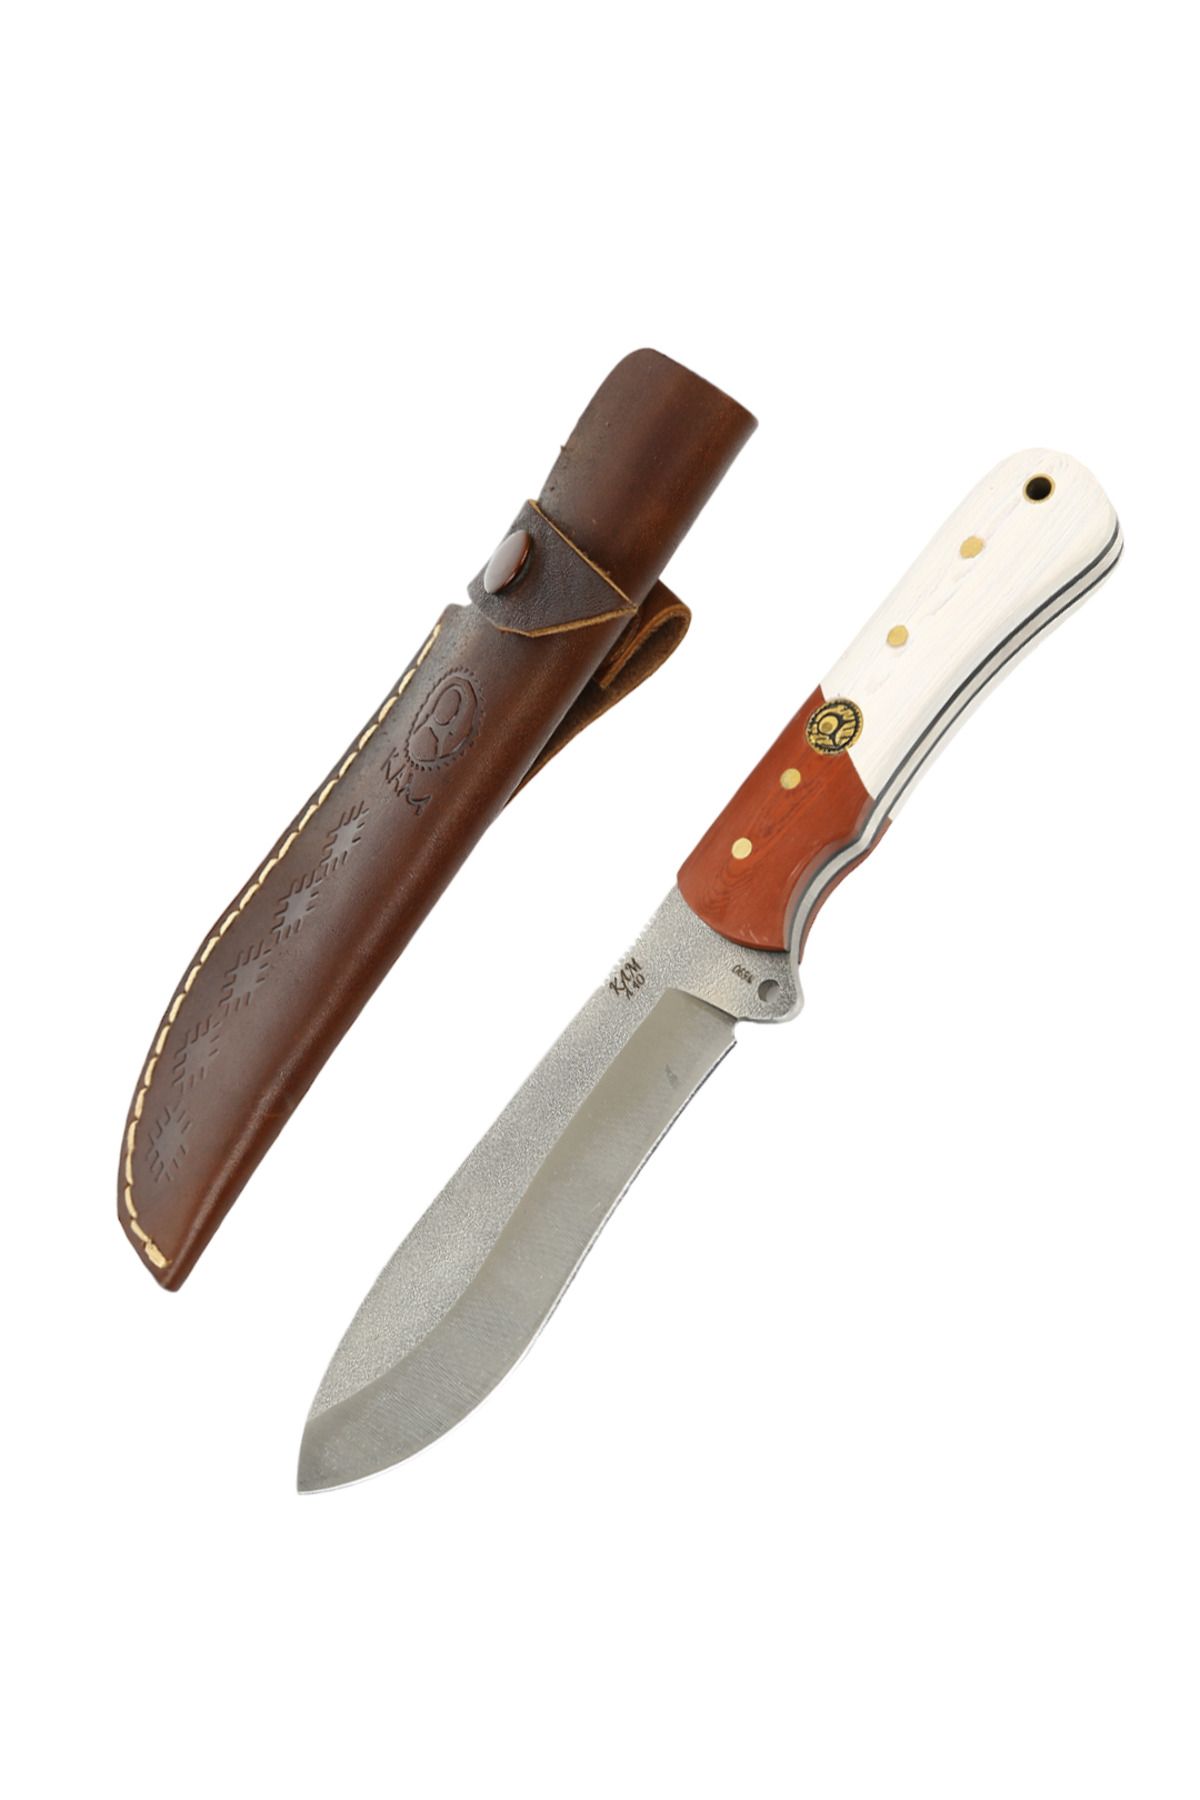 KAM KNIFE El Yapımı Kılıflı Fonksiyonel Sabit Bıçak-böhler N690 - A40 N690 Kızıl Beyaz